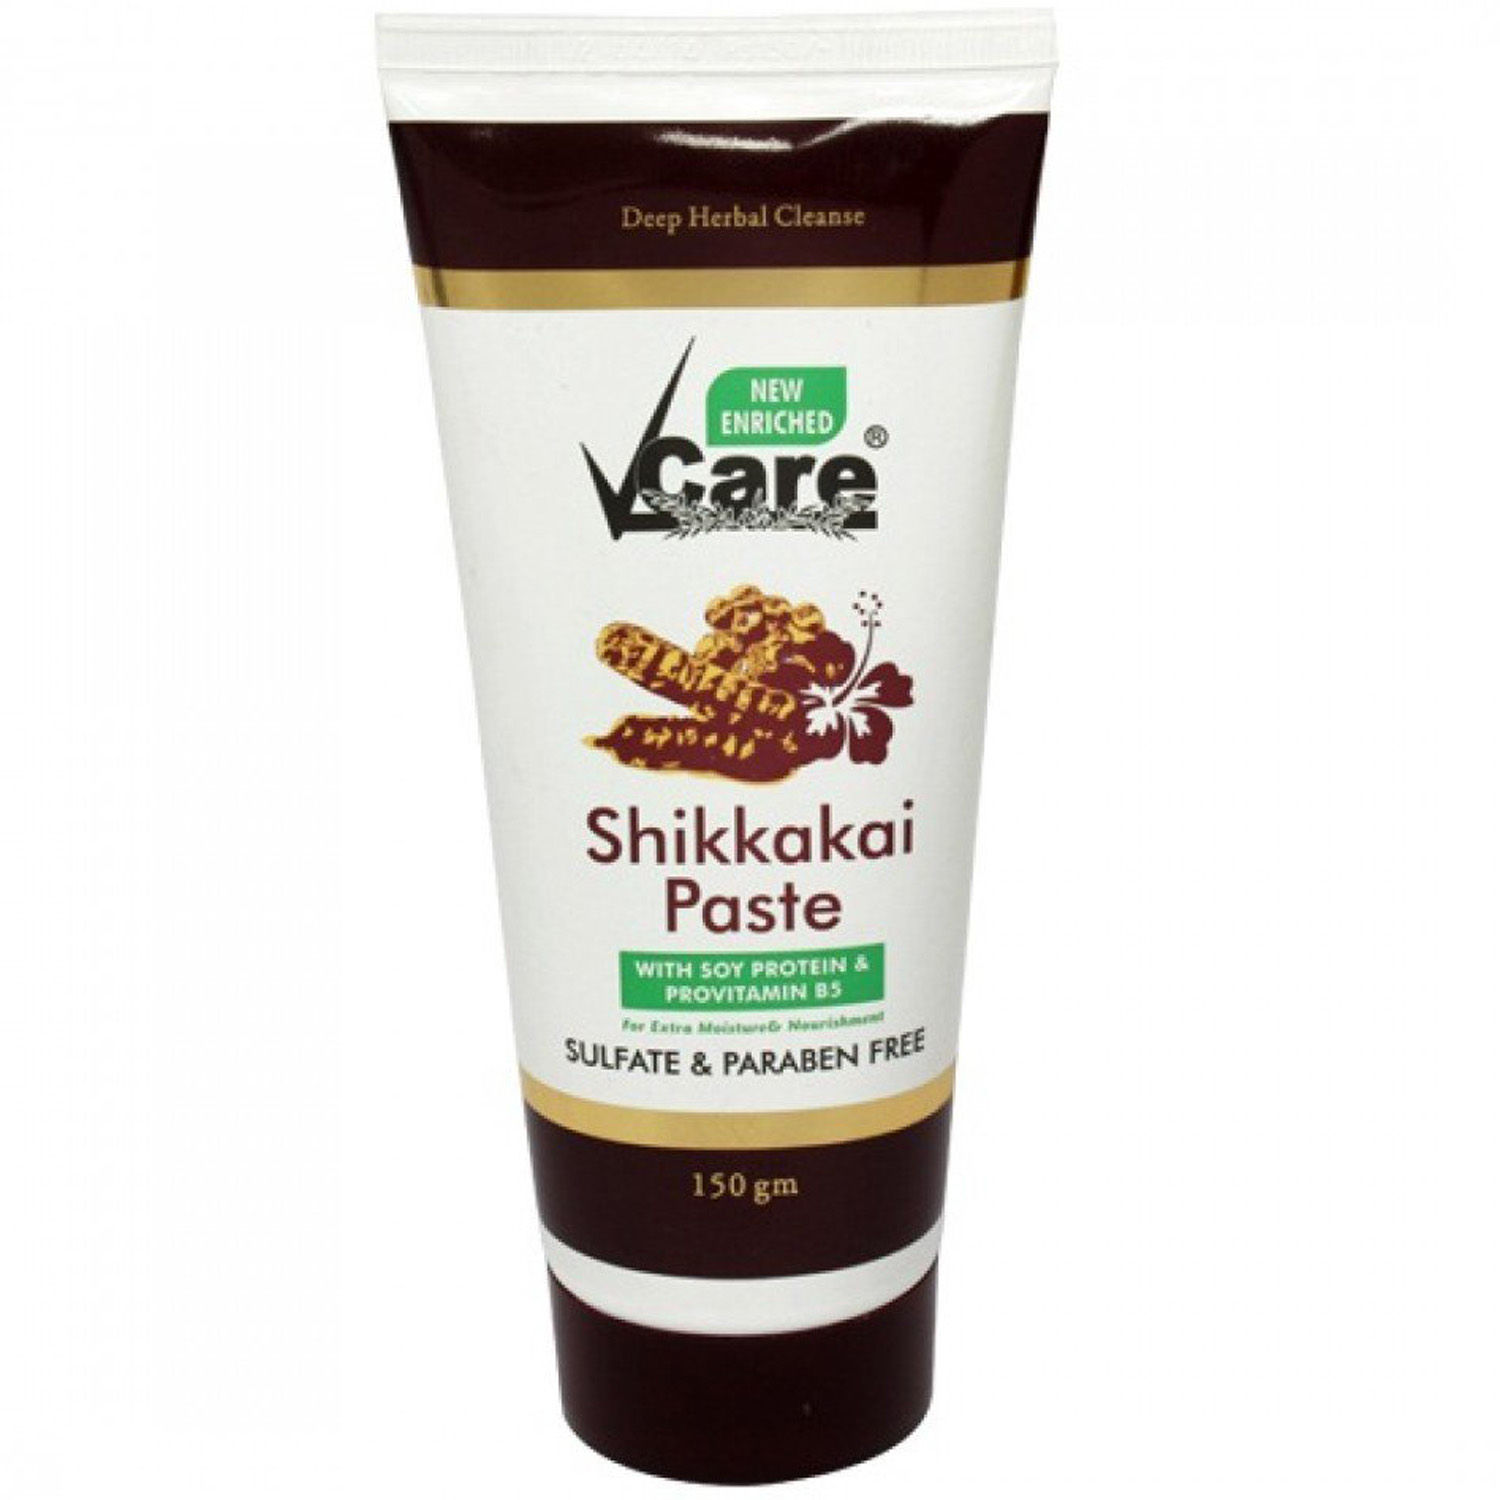 Buy Vcare Shikkakai Paste, 150 gm Online